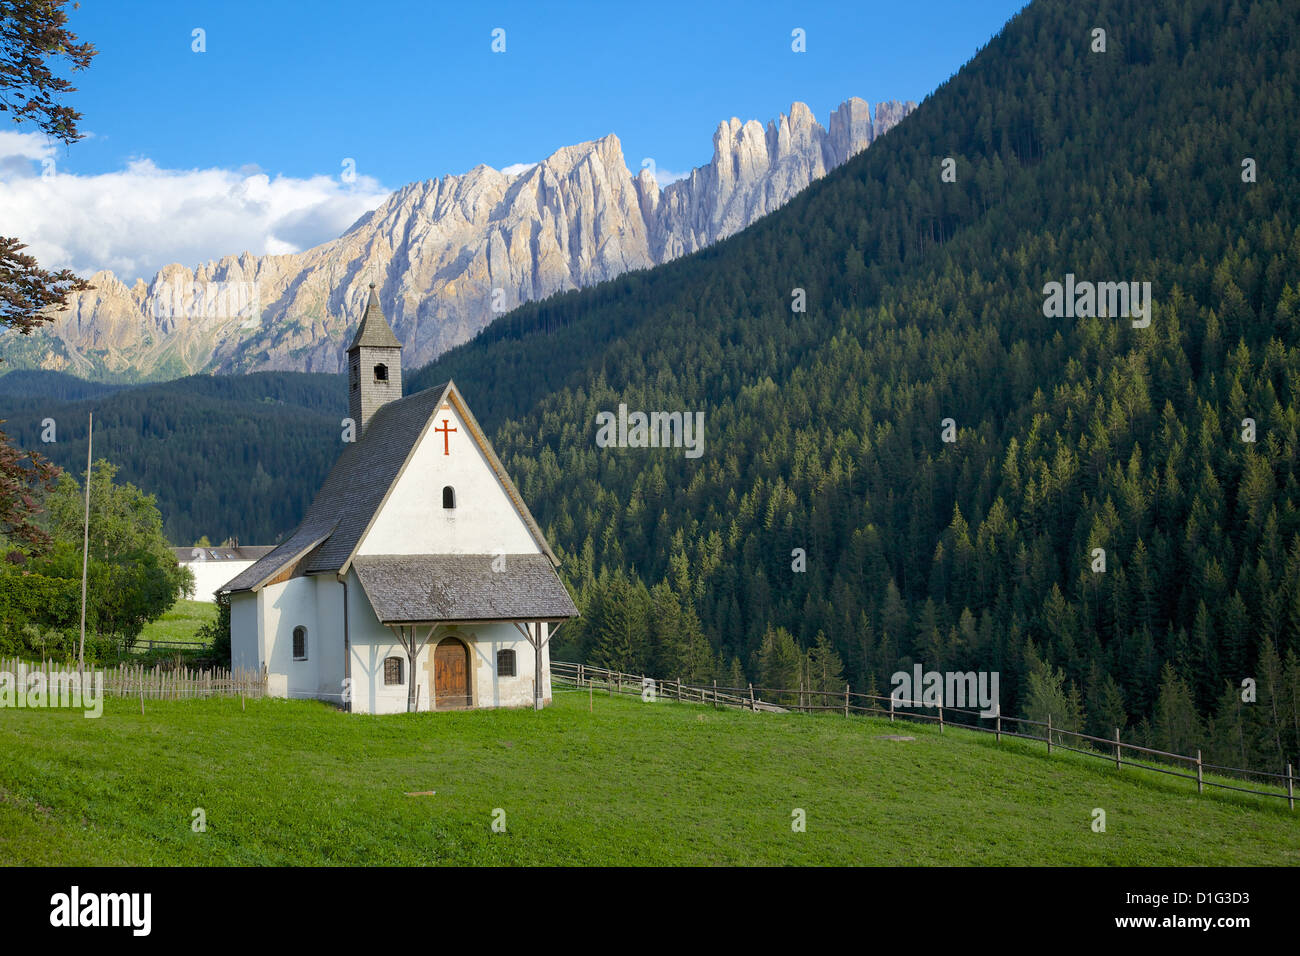 Church and Latemar Group mountains near Welschnofen, Bolzano Province, Trentino-Alto Adige/South Tyrol, Italian Dolomites, Italy Stock Photo